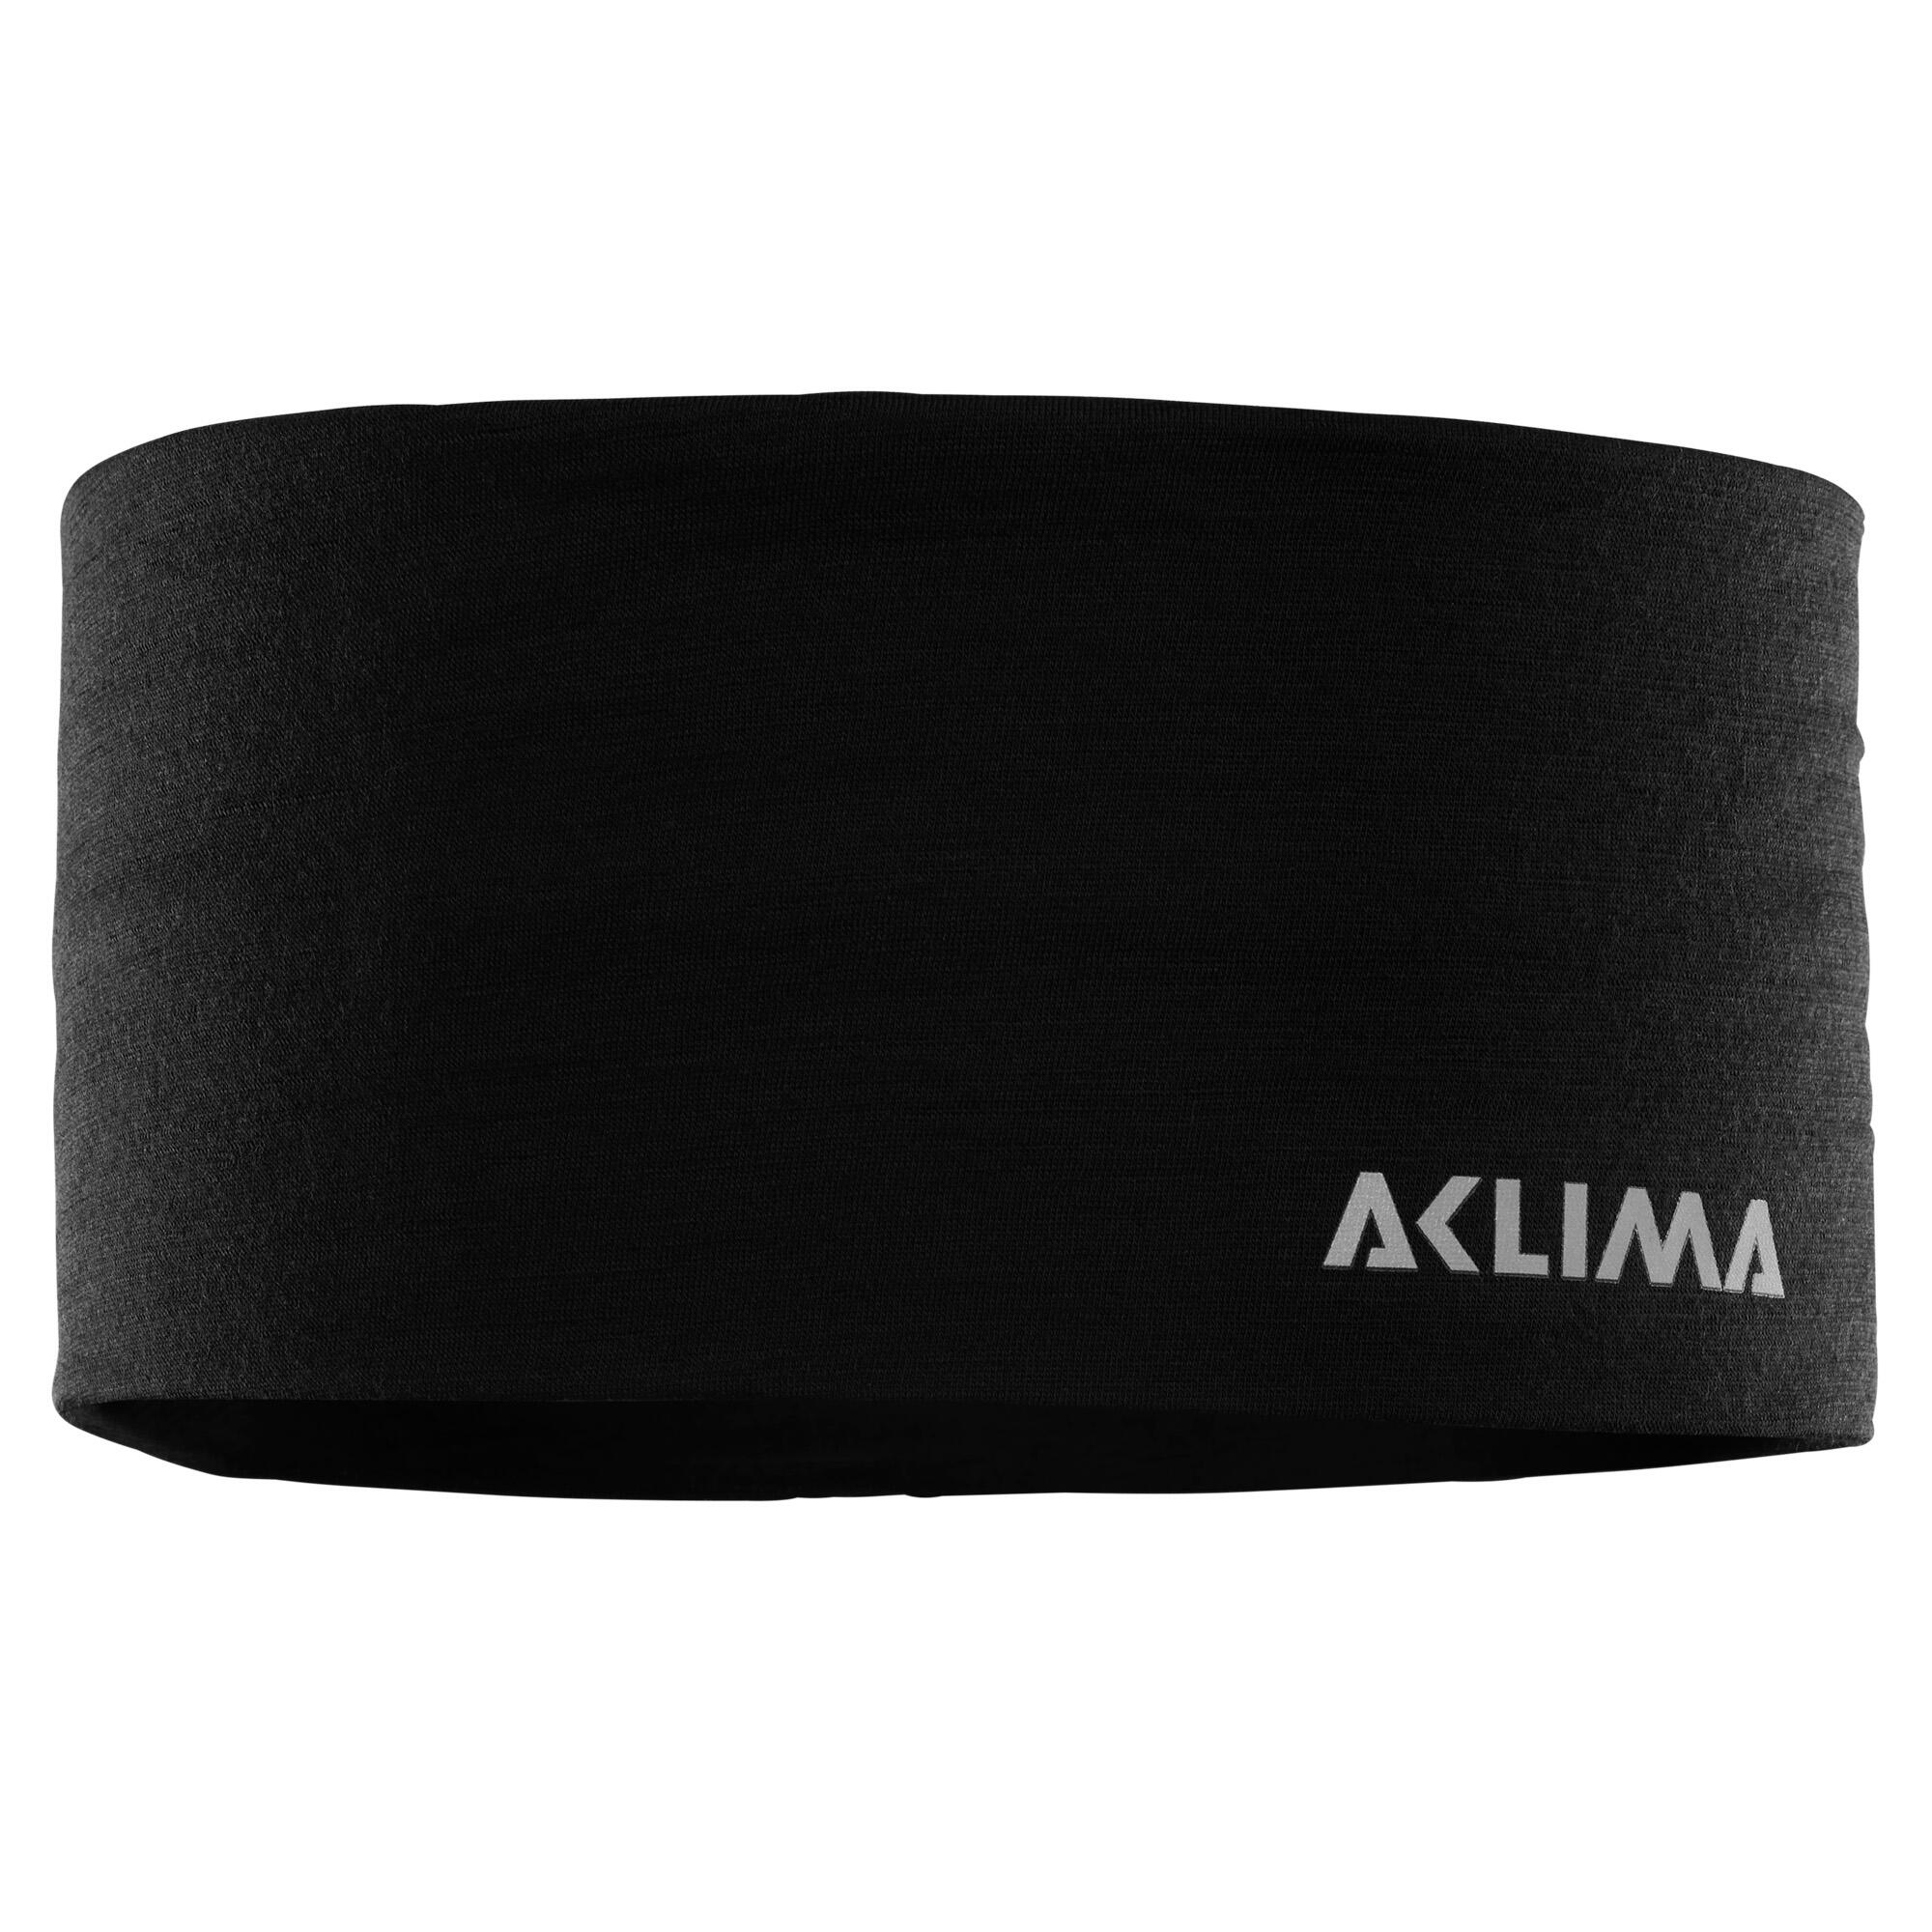 Billede af Aclima Large Headband Black